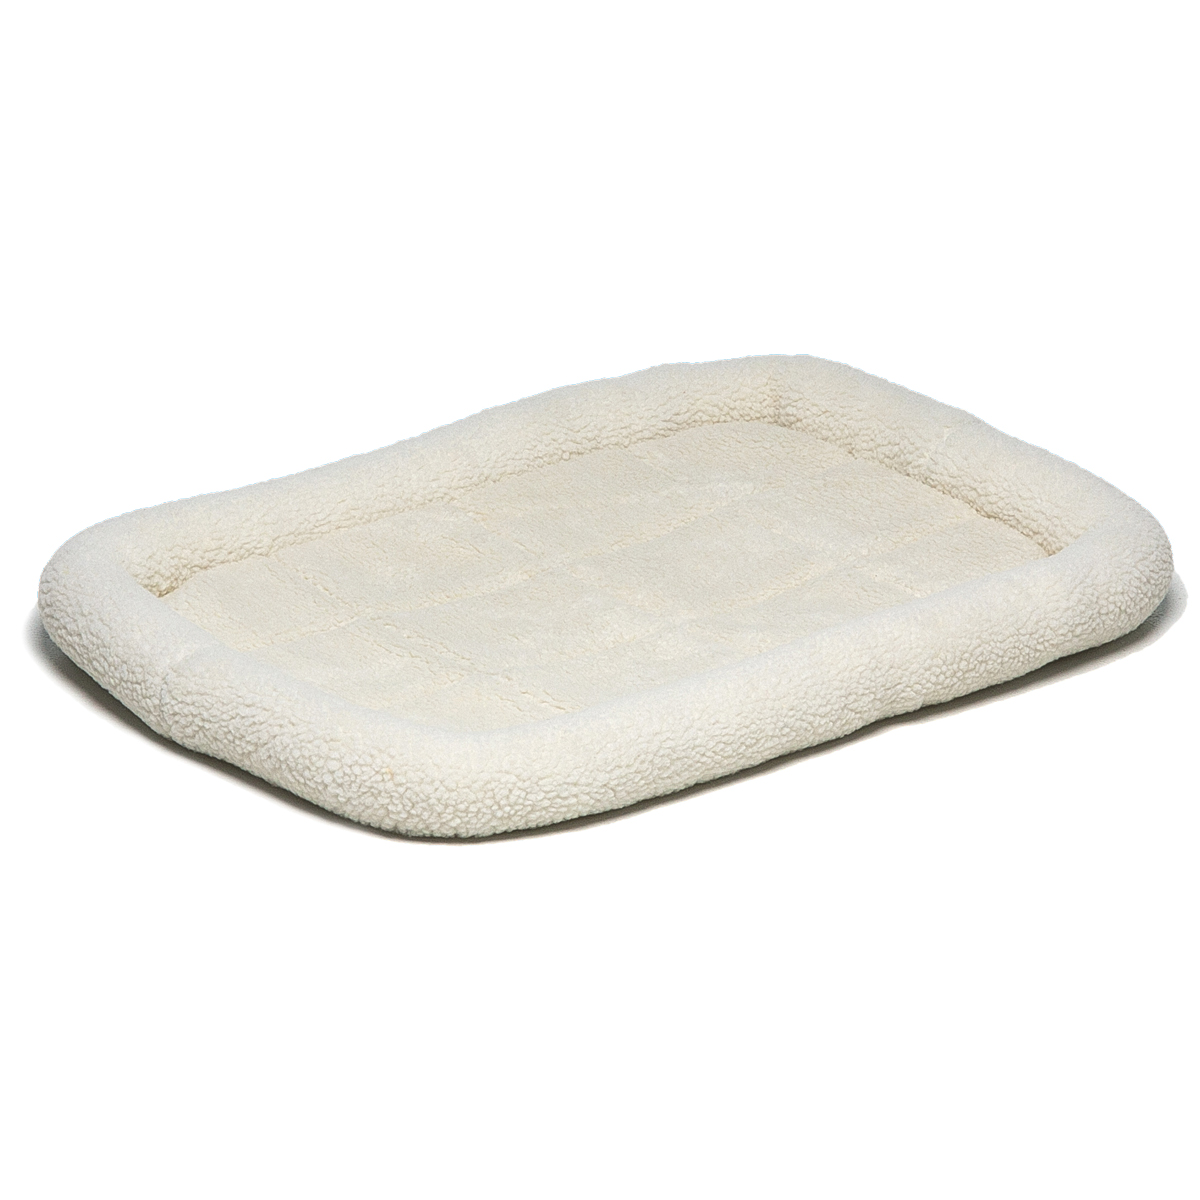 Лежак для животных MidWest, белый, под клетку №2, 58x41x7,5 см